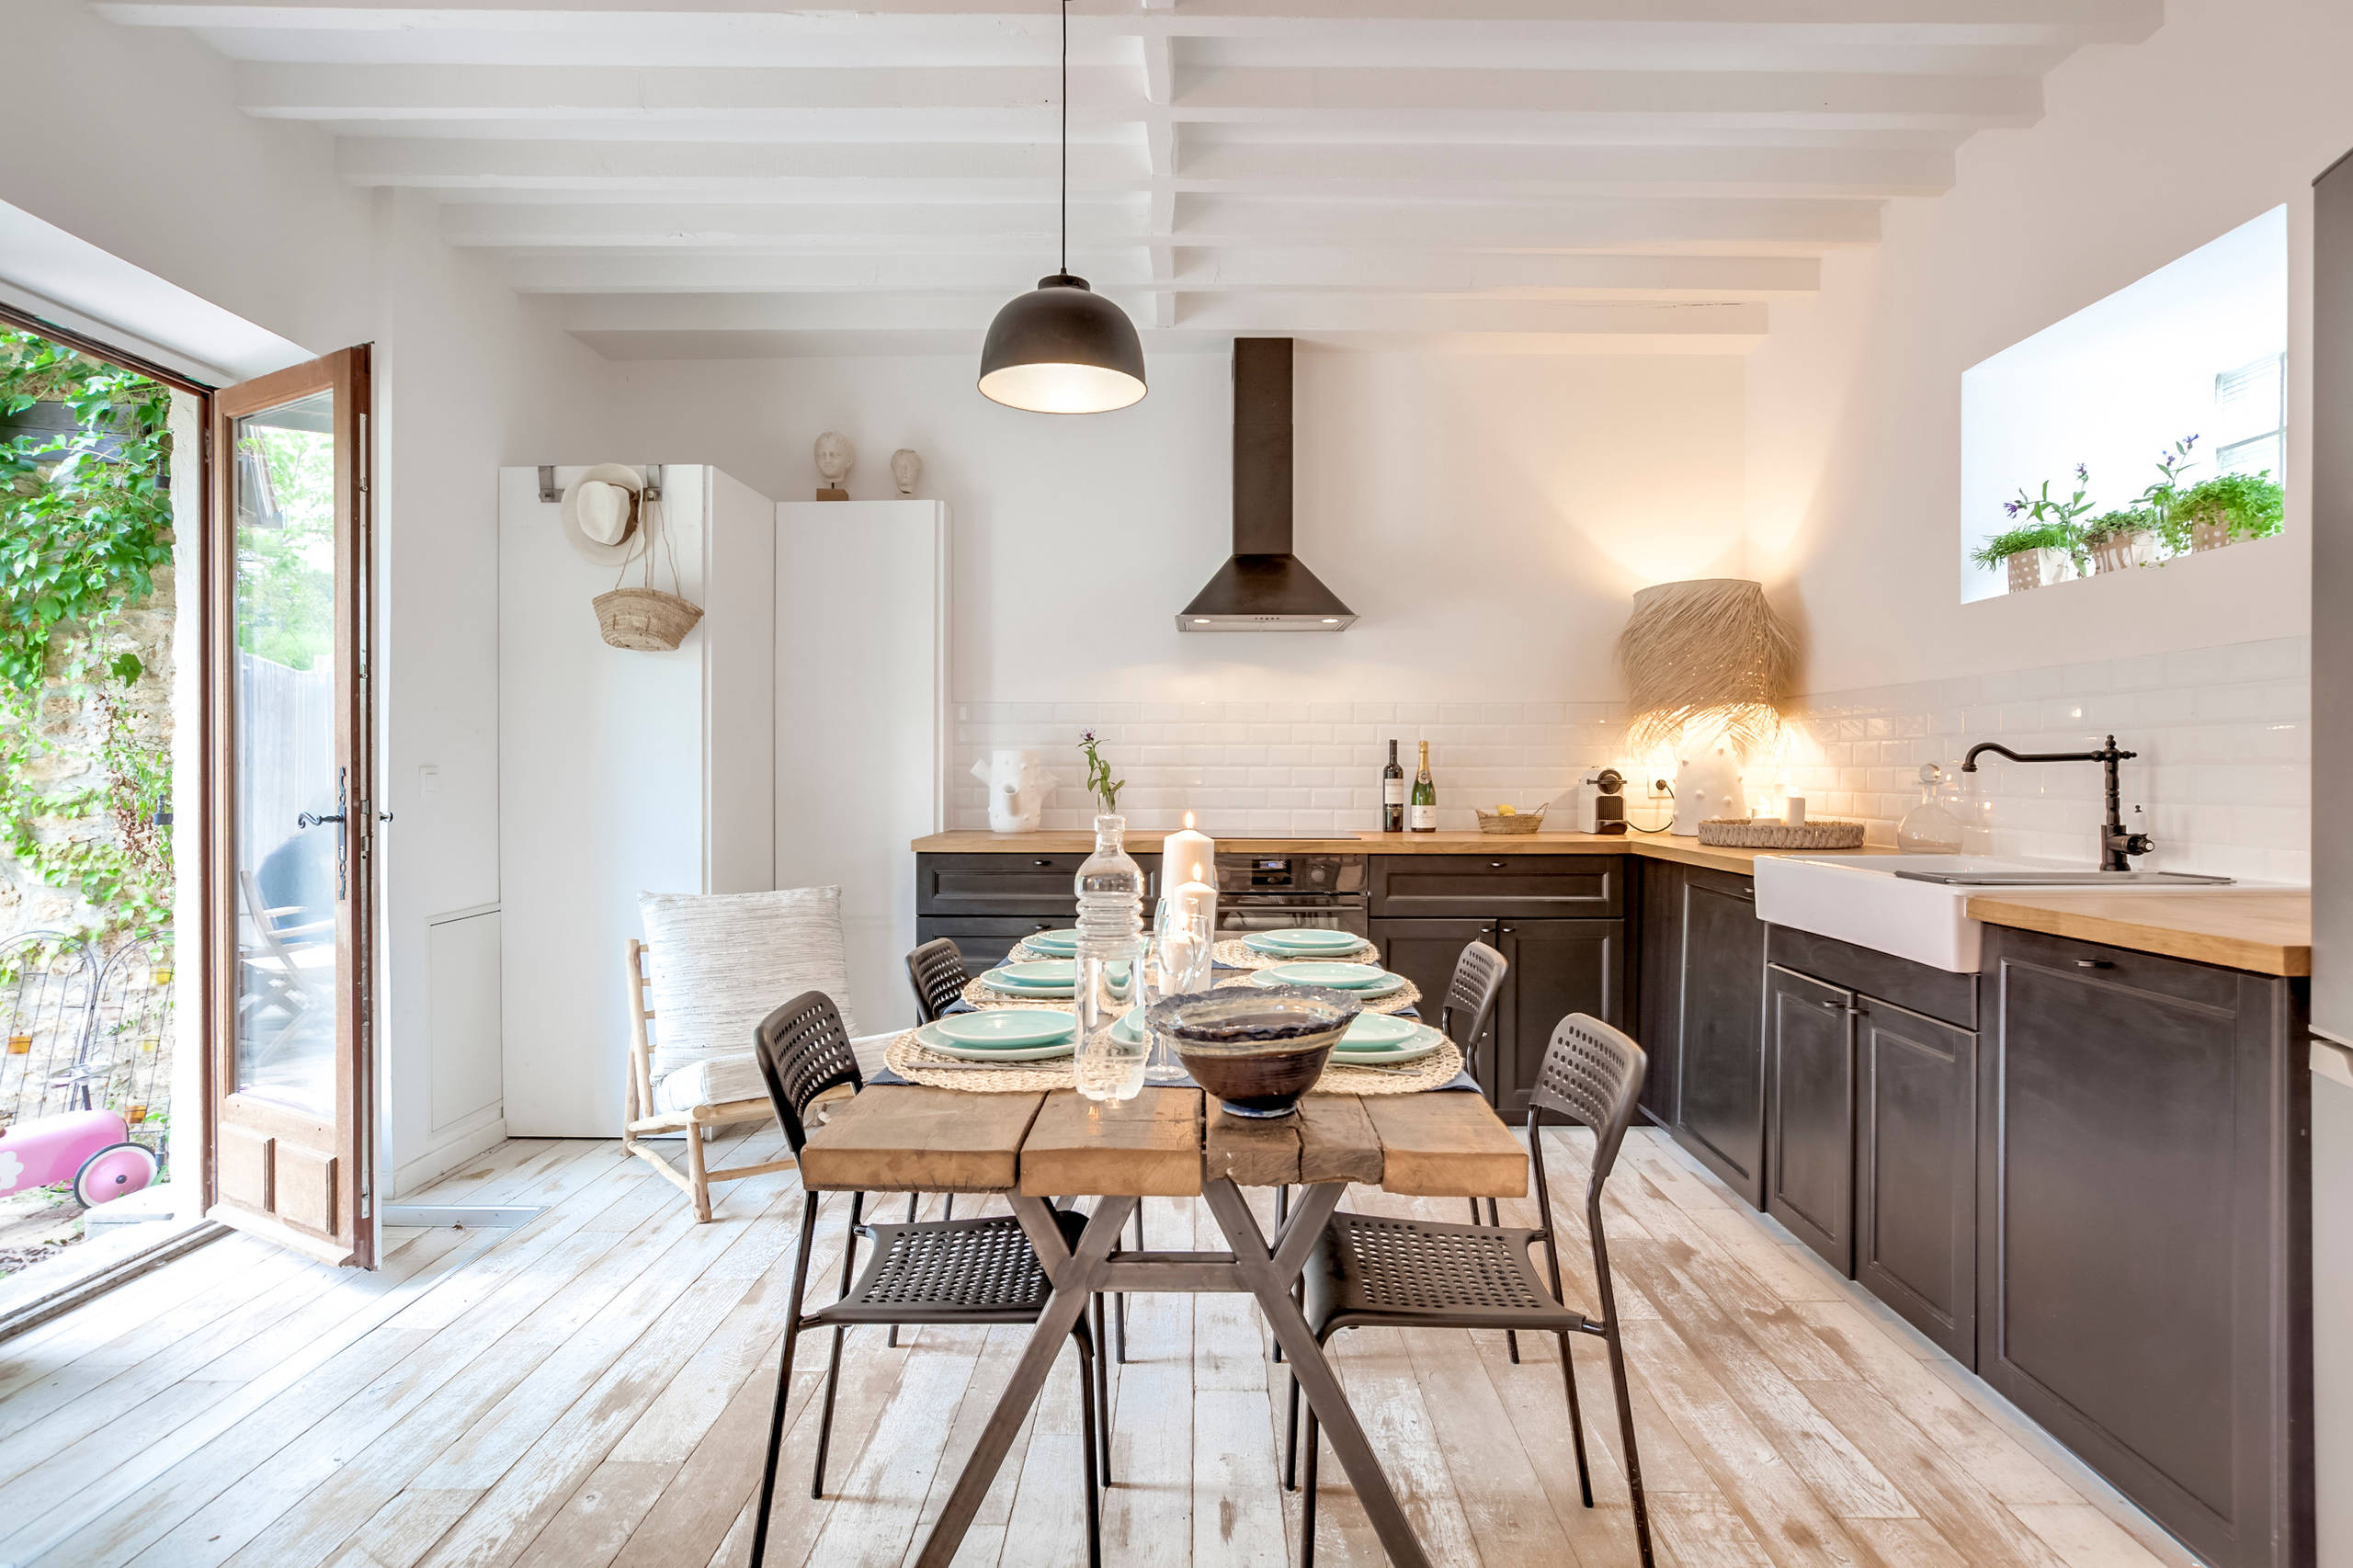 Rénovation complète d'une maison familiale de 135 m2 dans les Yvelines